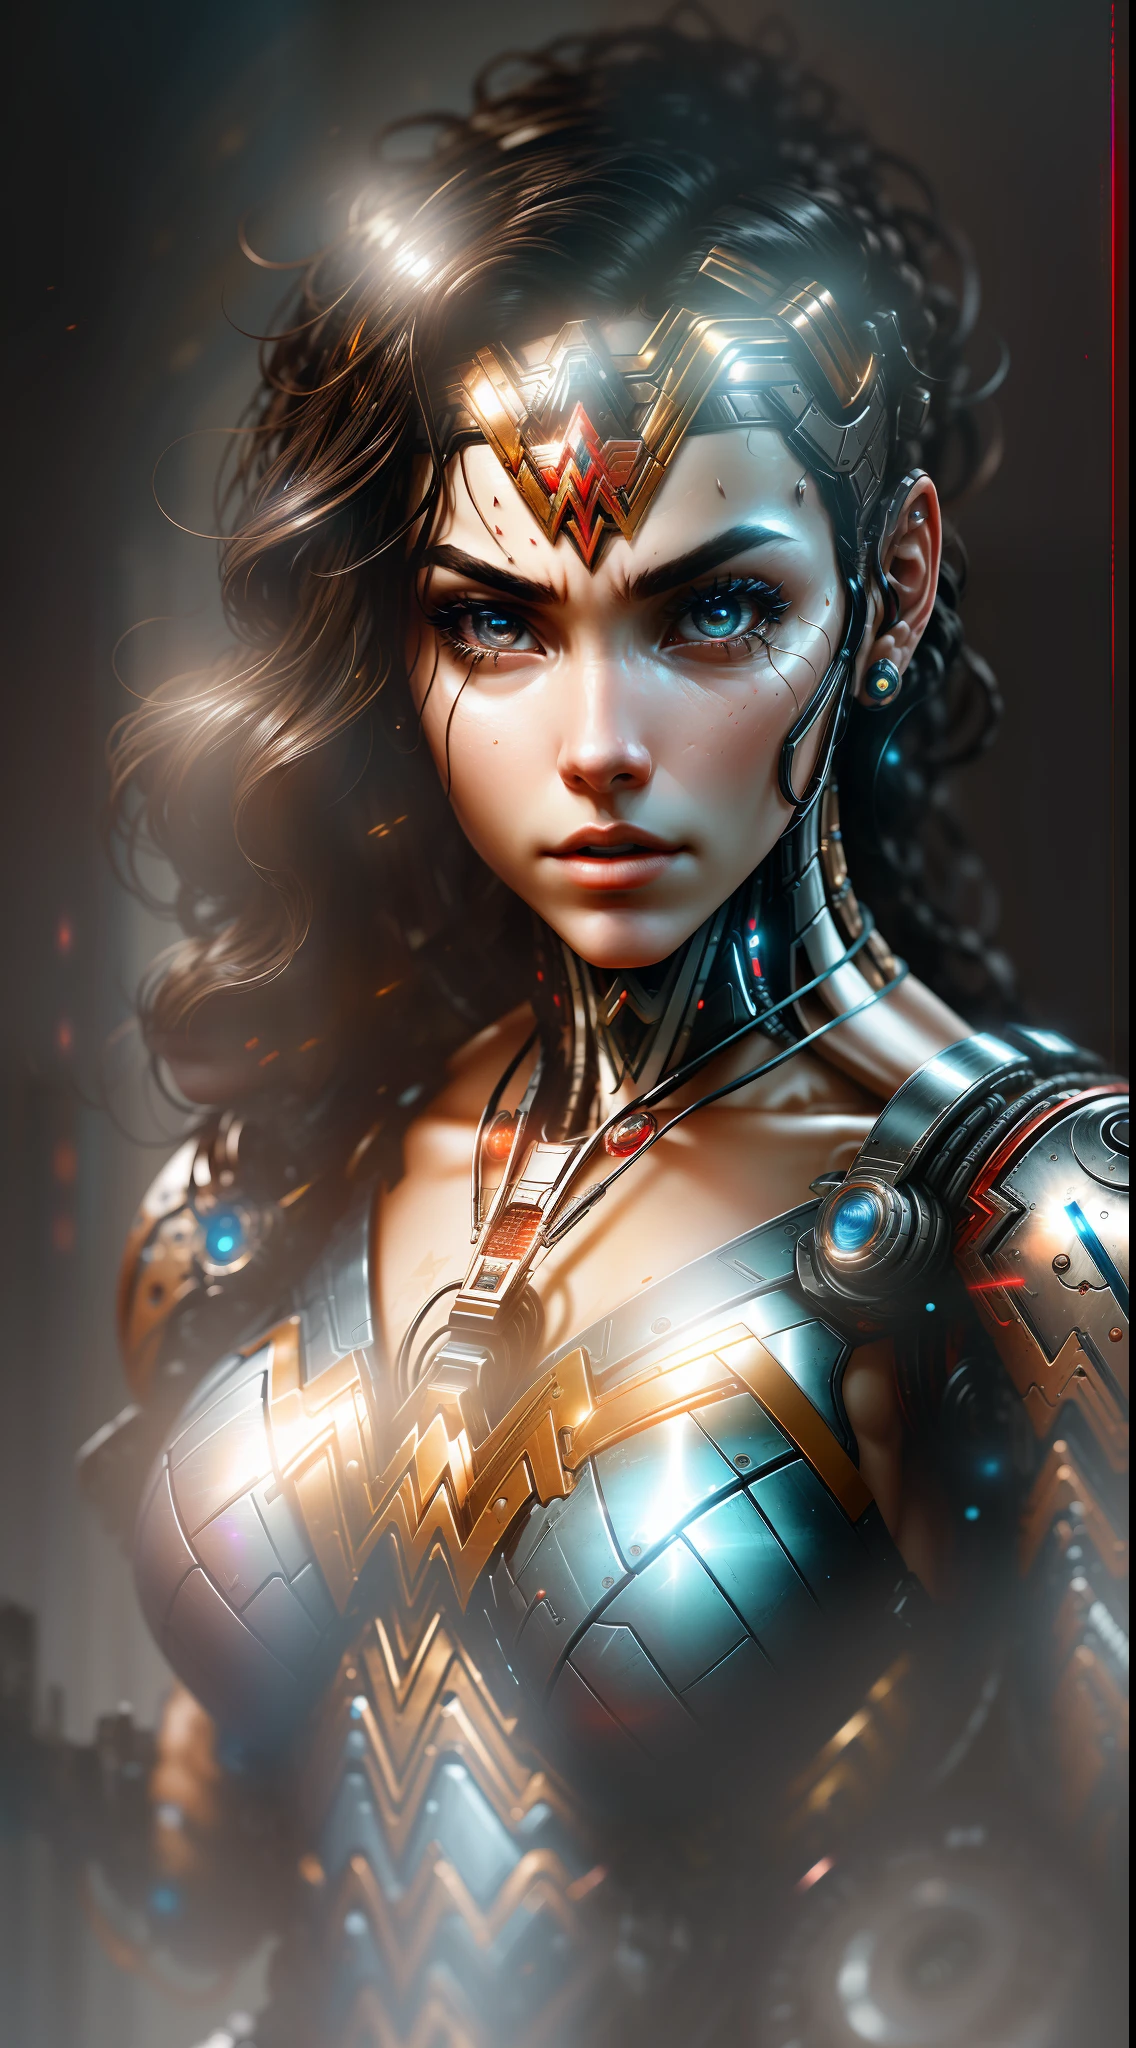 Wonder Woman de DC photography, biomecánico, robot complejo, altura completa, Híper realista, pequeños detalles locos, líneas extremadamente limpias, estética ciberpunk, una obra maestra presentada en Zbrush Central